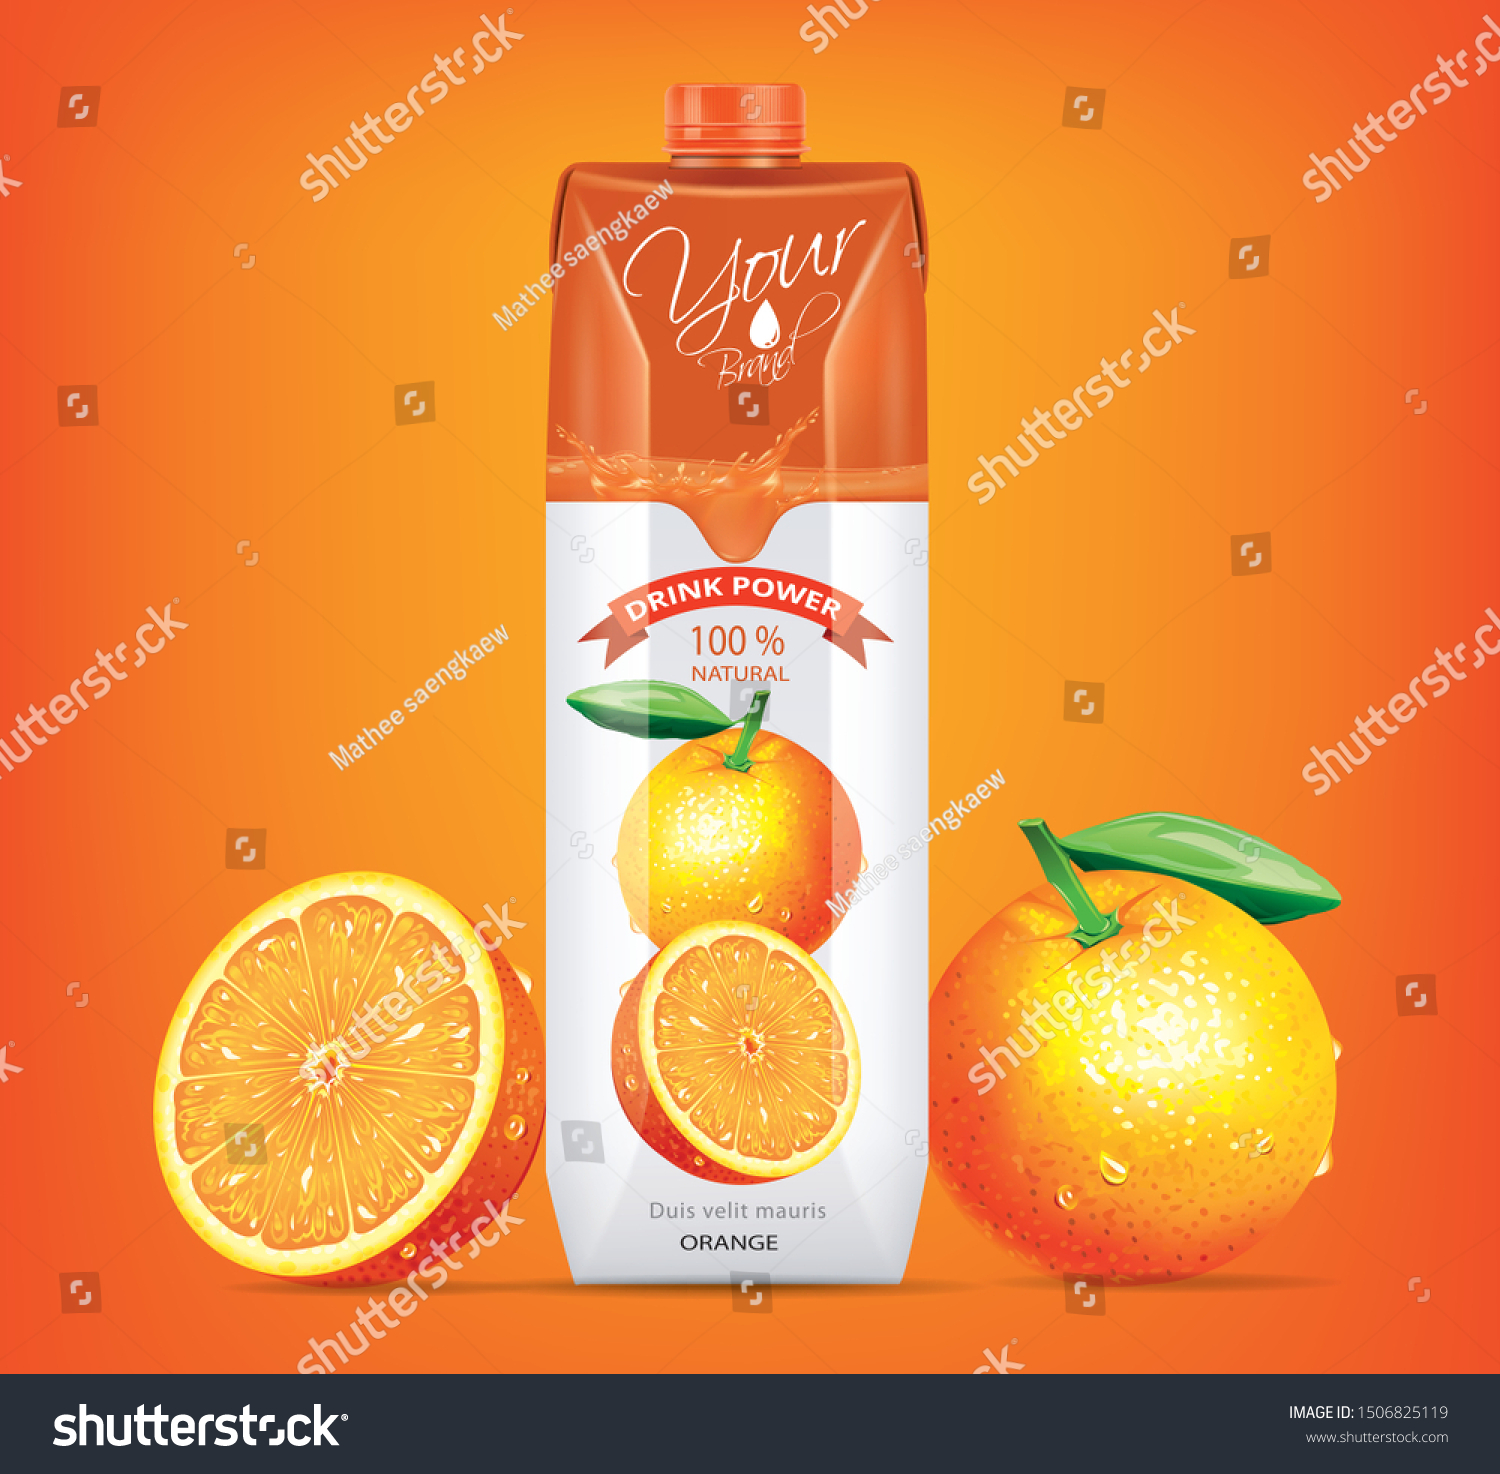 SVG of Orange juice drink carton mockup in 3d illustration on orange background svg